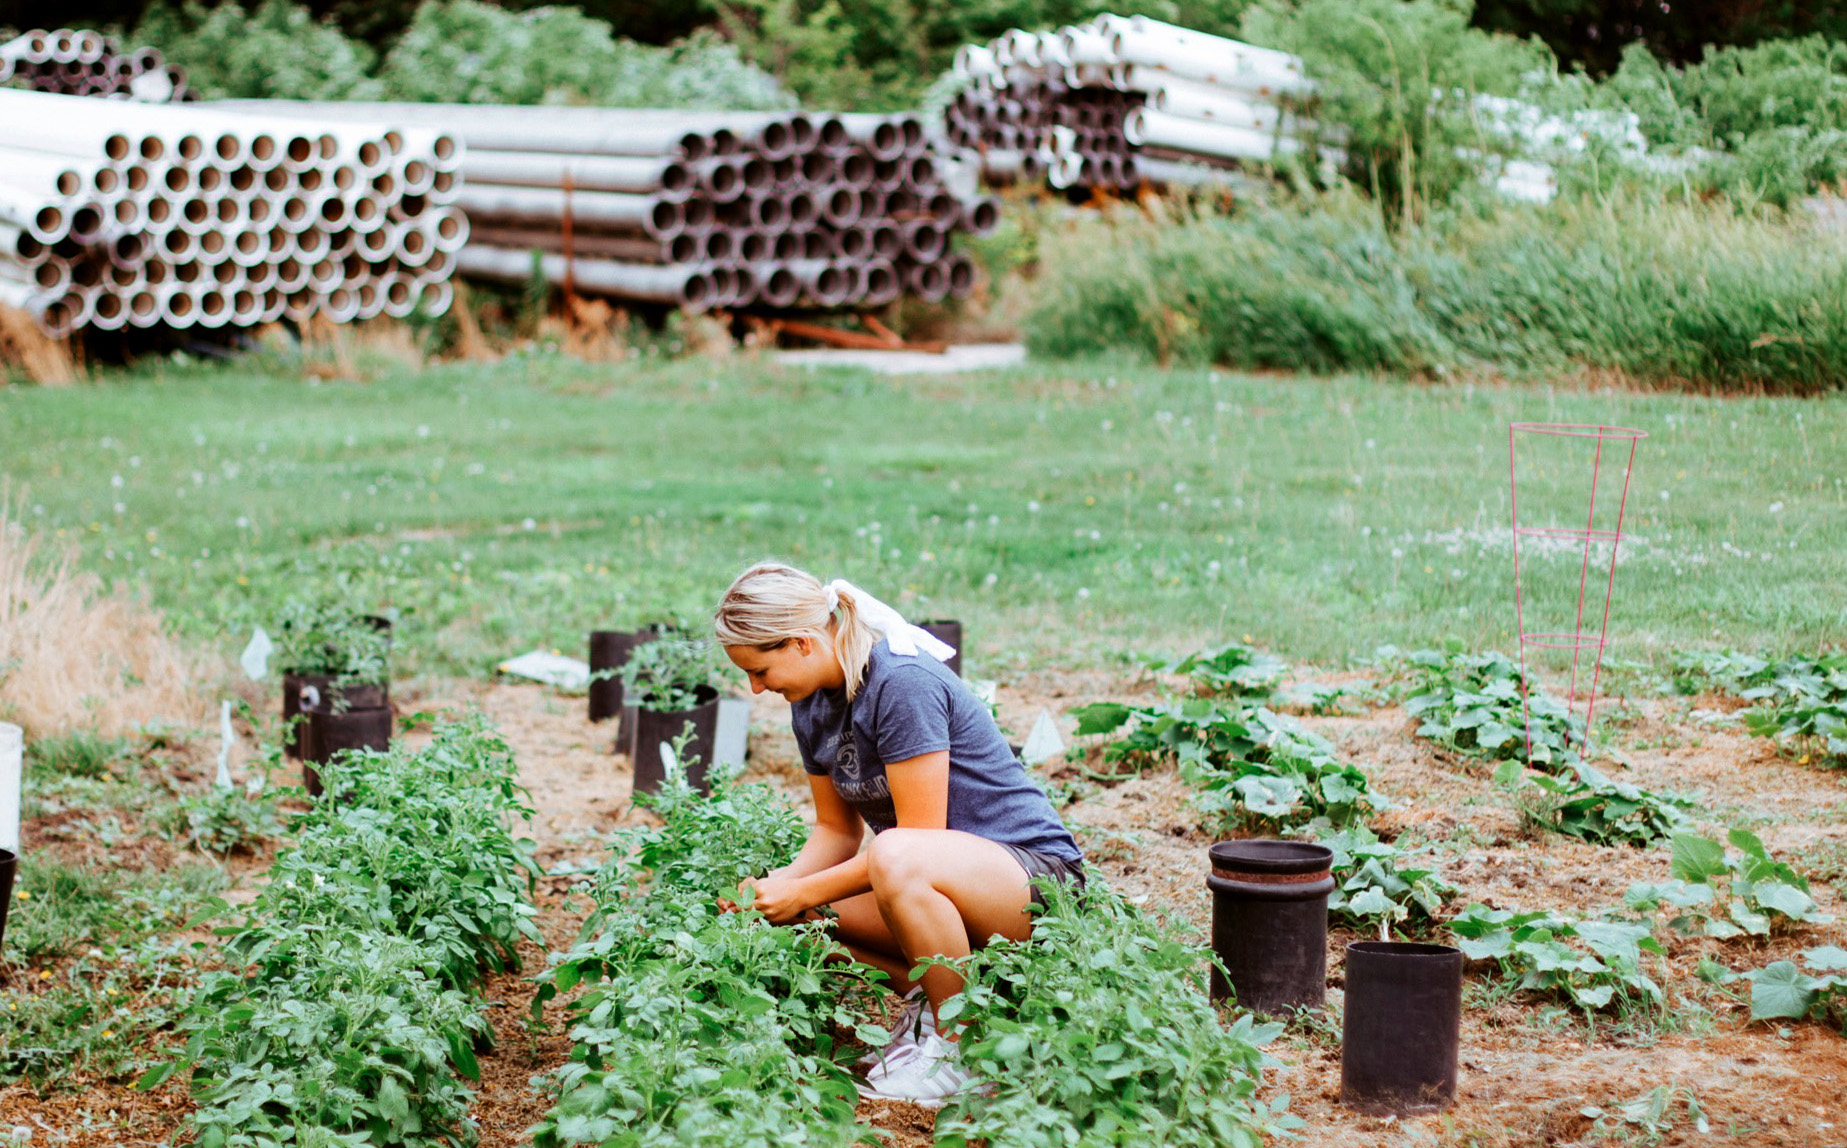 Husker senior Lily Woitaszewski tends to her family's garden in Wood River, Nebraska.